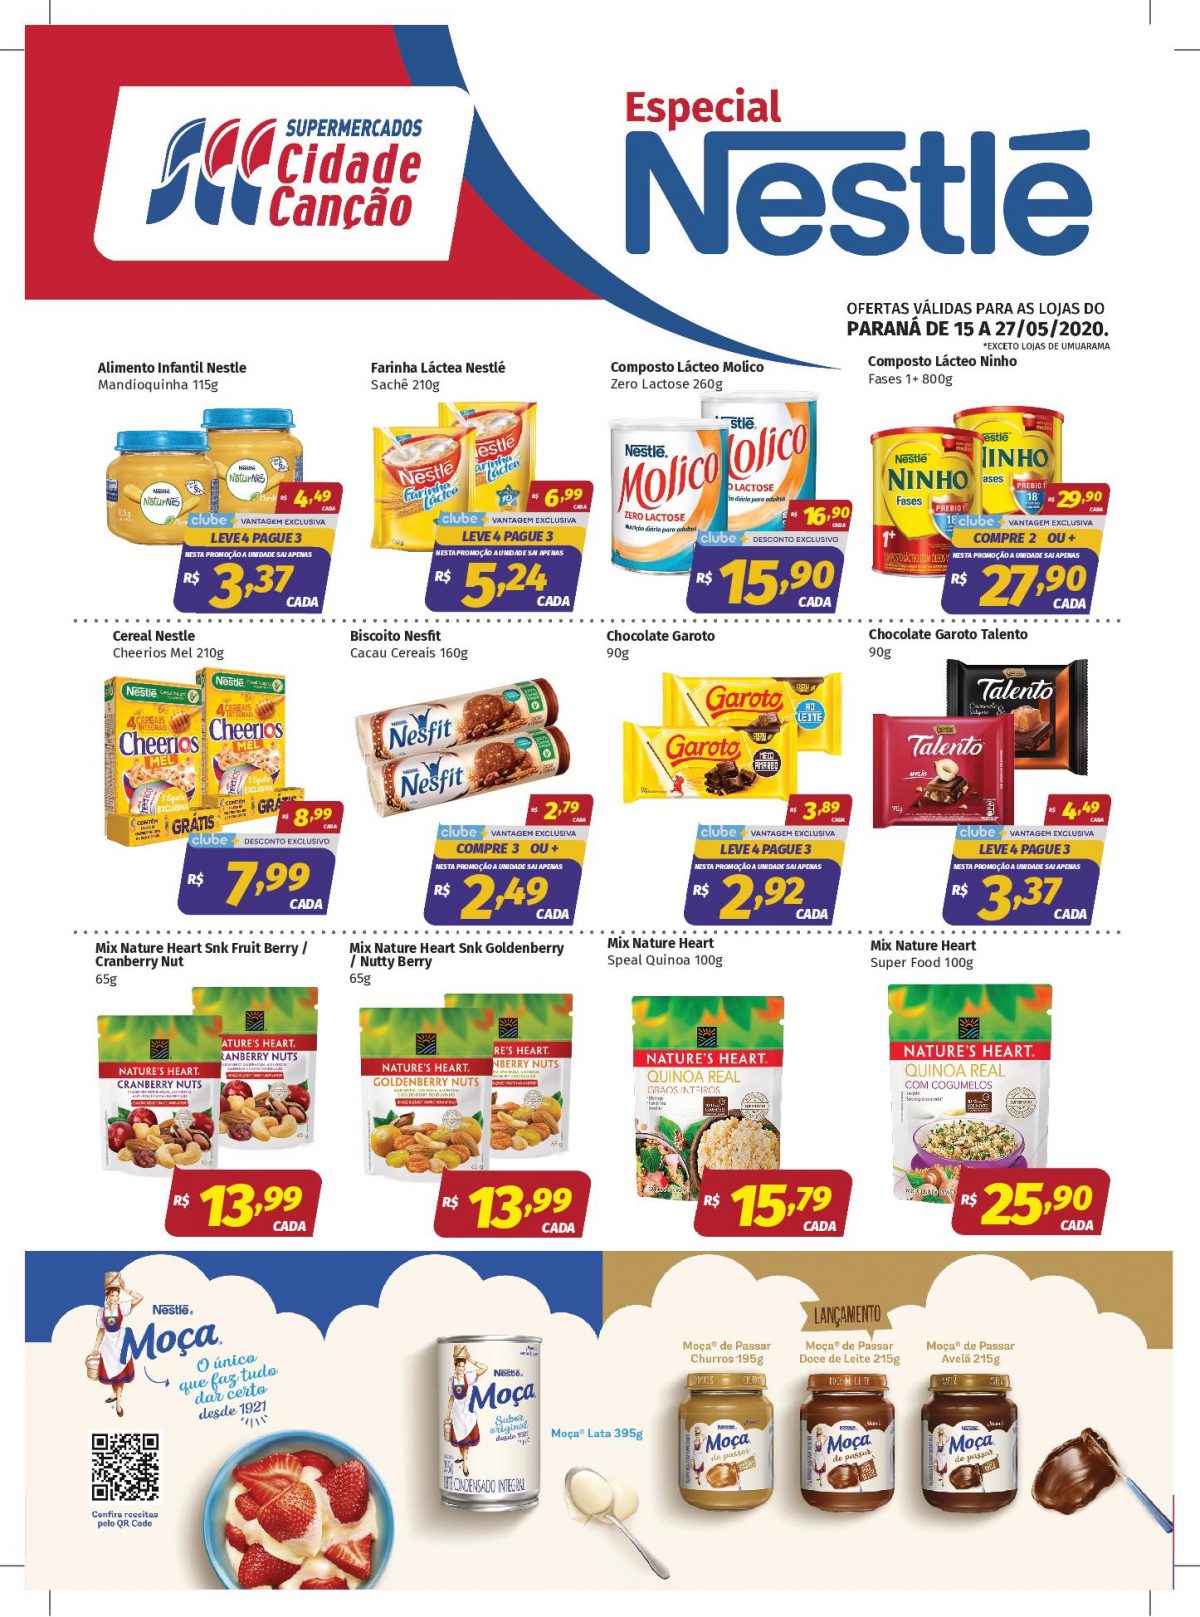 Ofertas Especiais Nestlé – Paraná